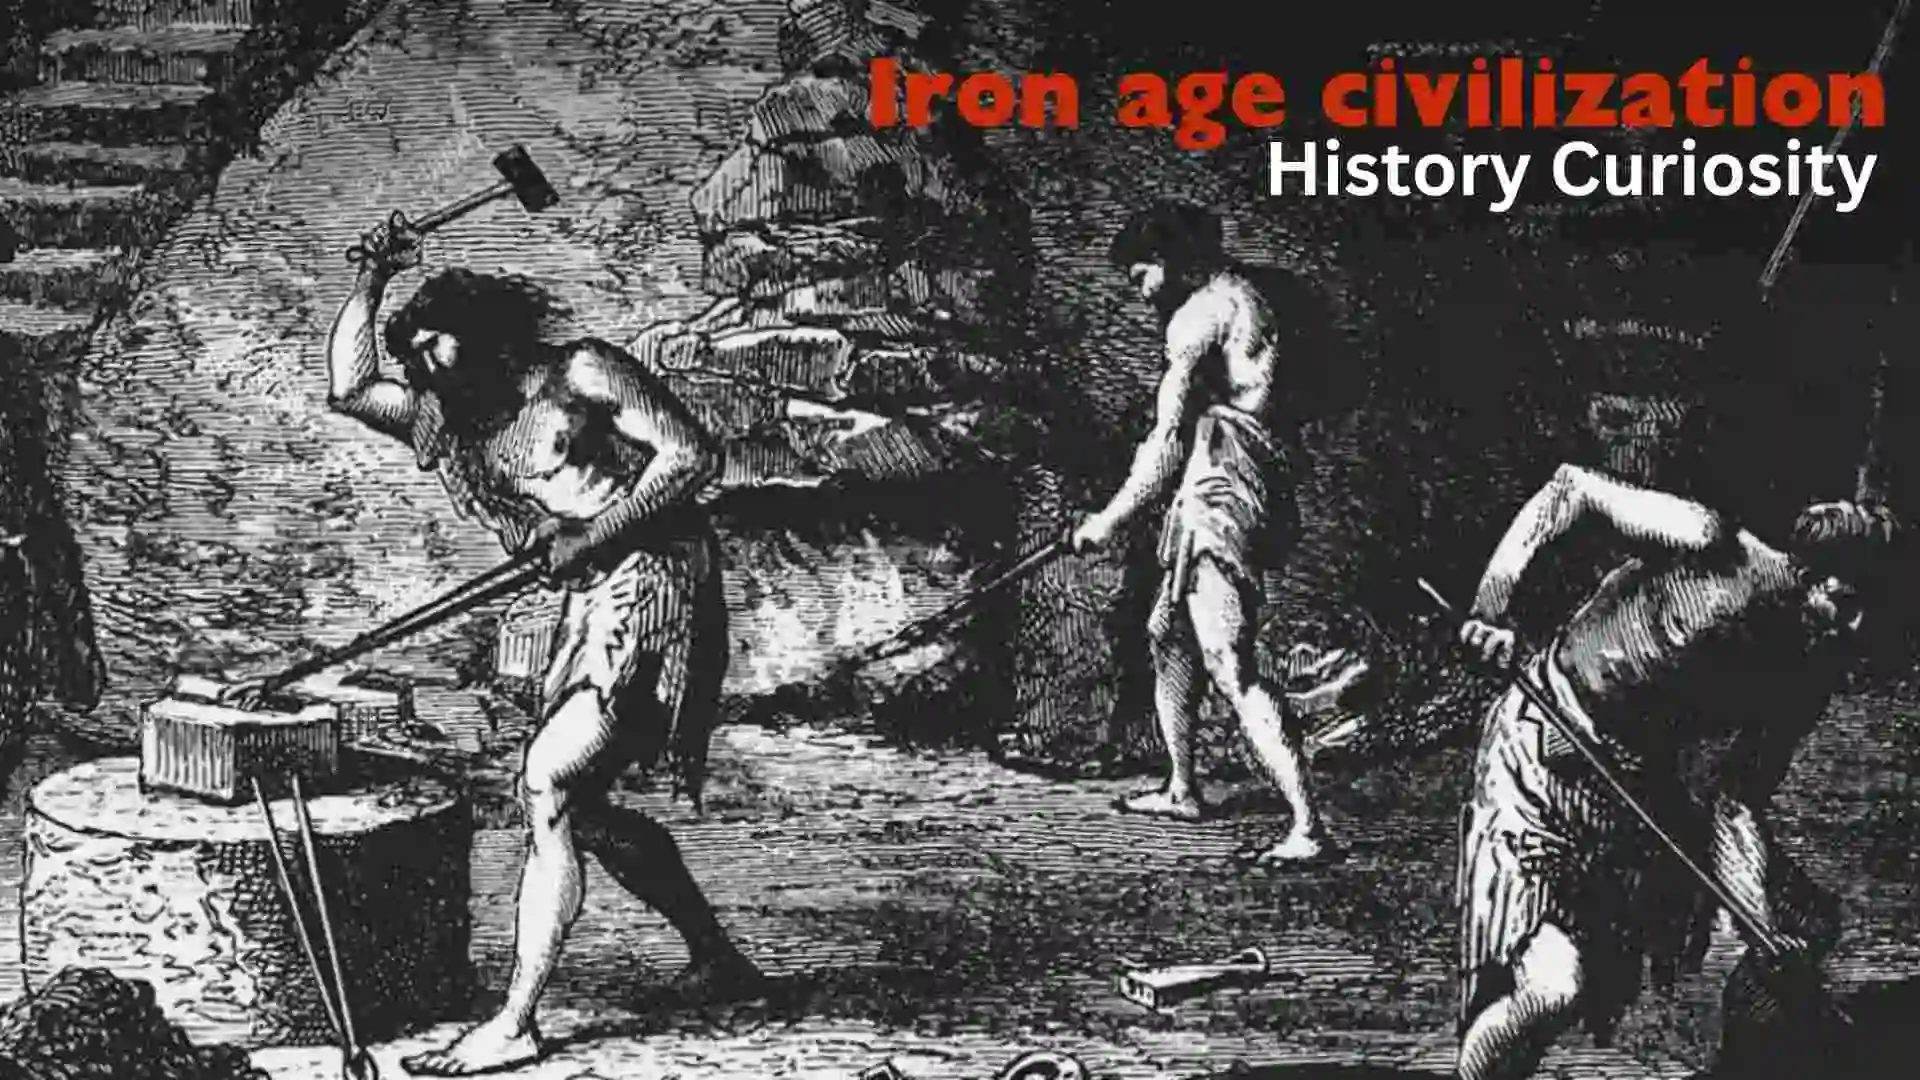 Iron age civilization